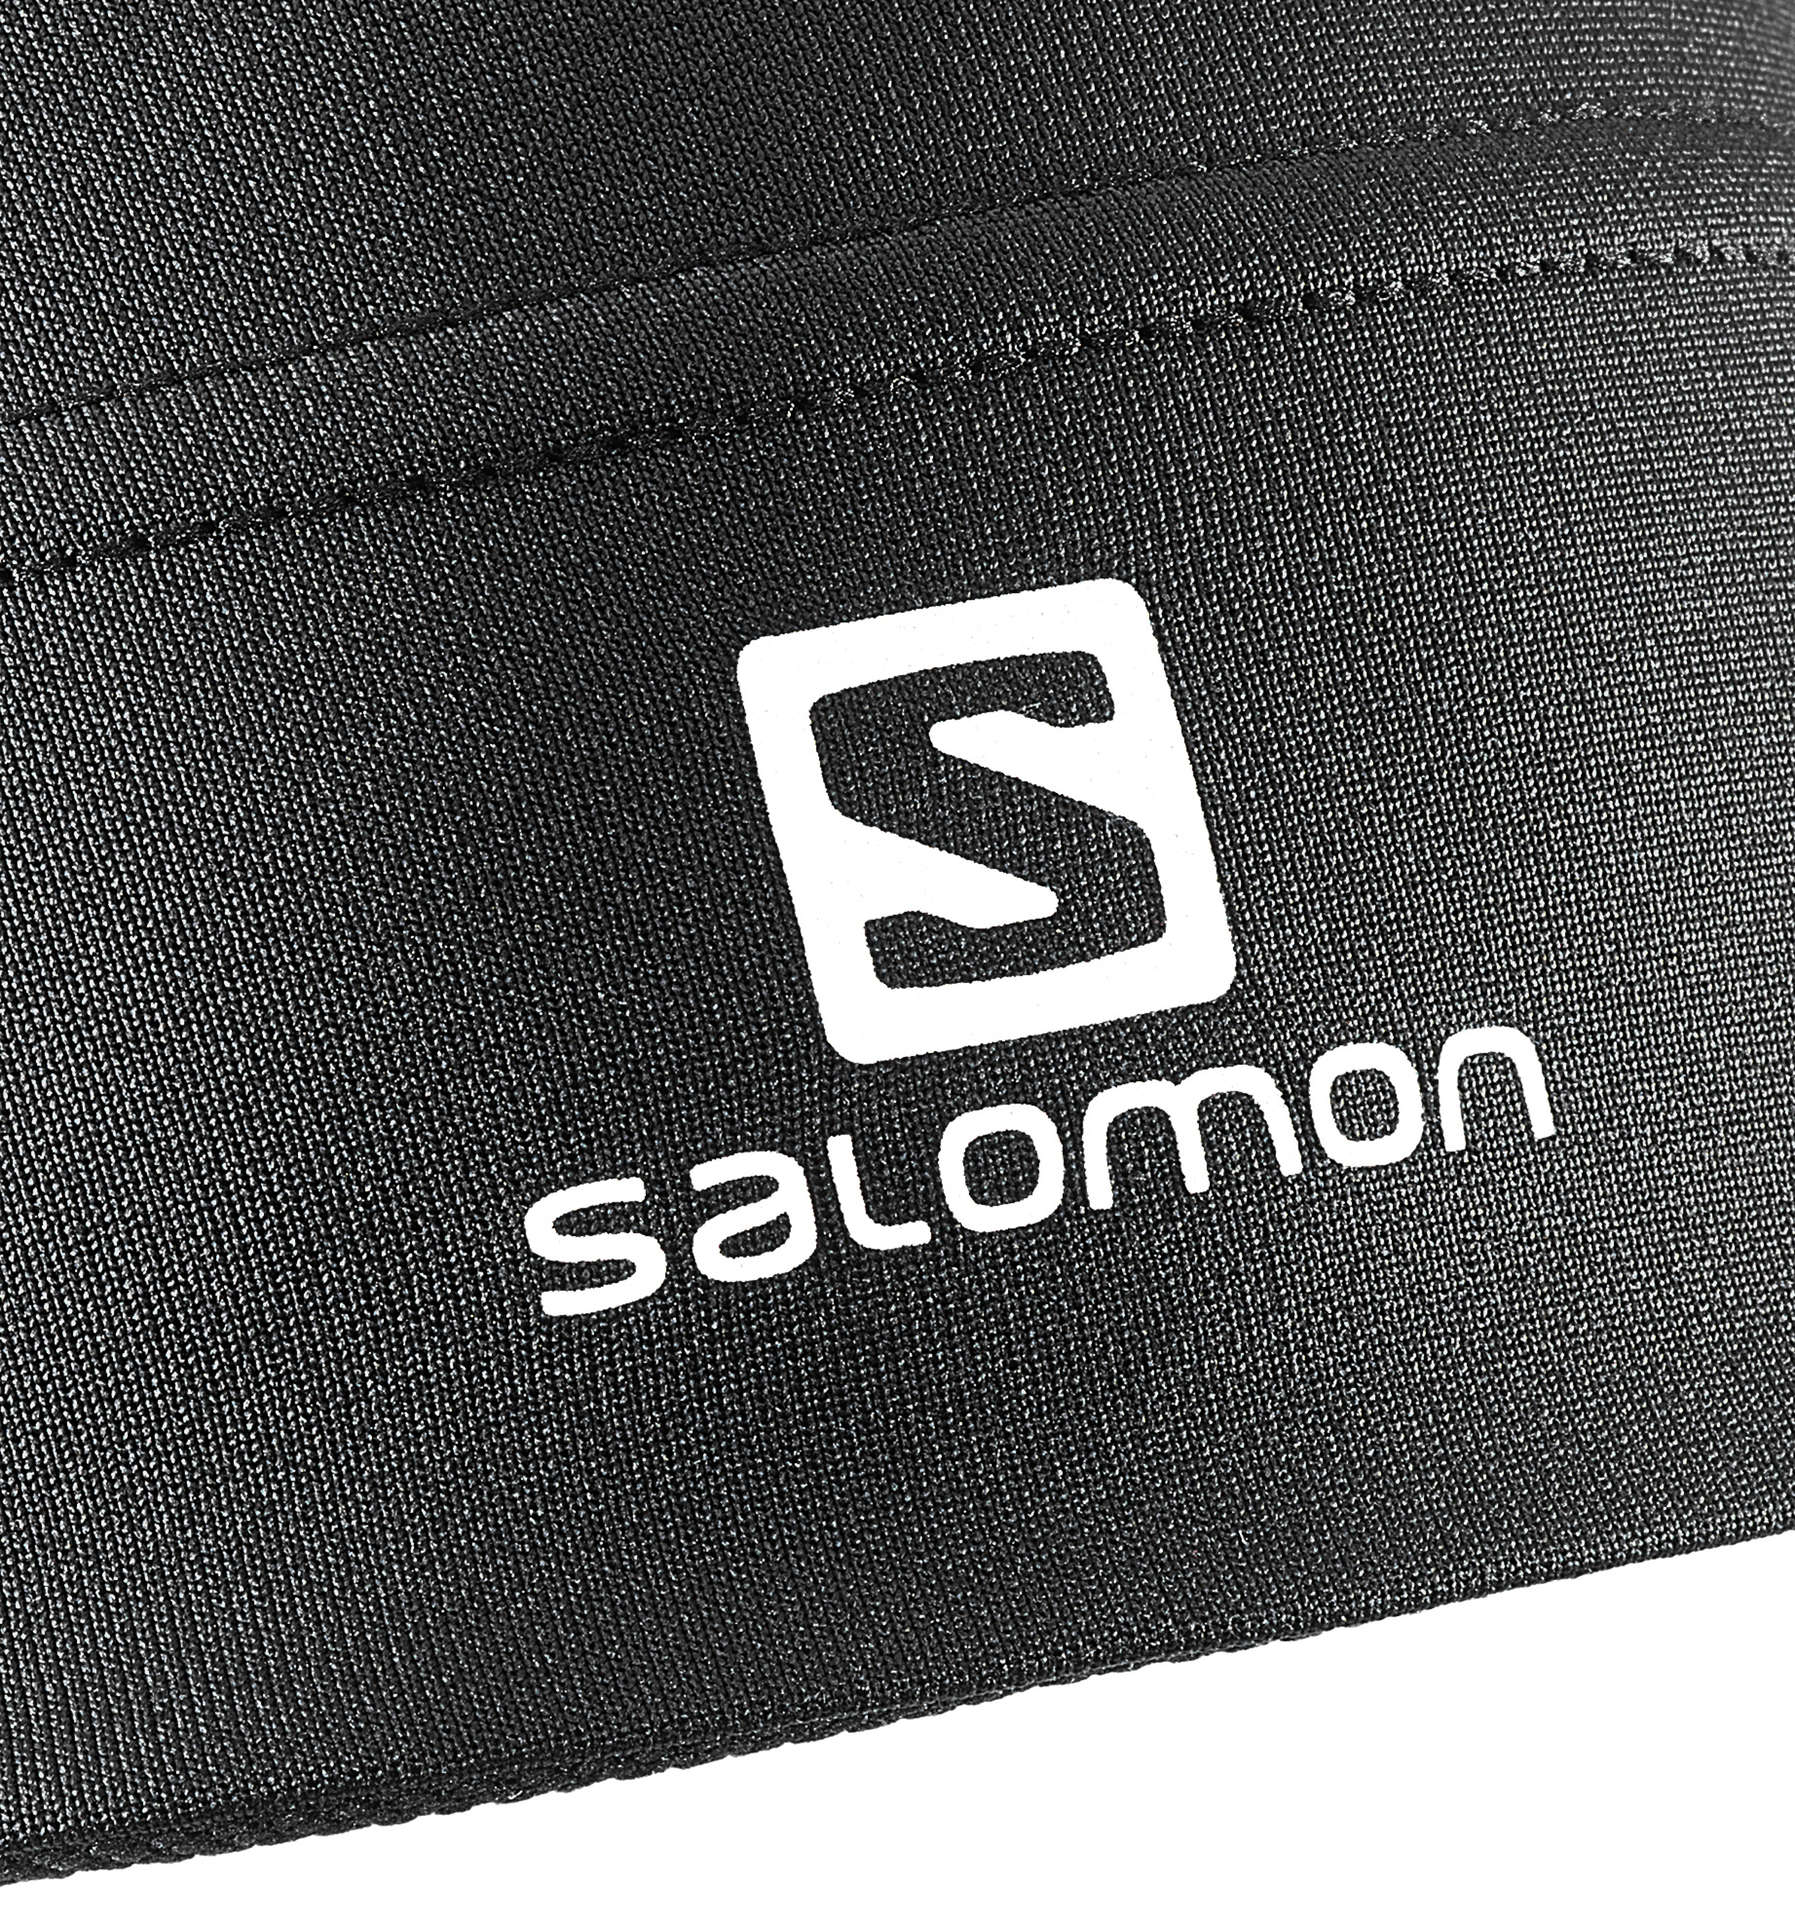 Salomon Active Beanie Zwart Unisex